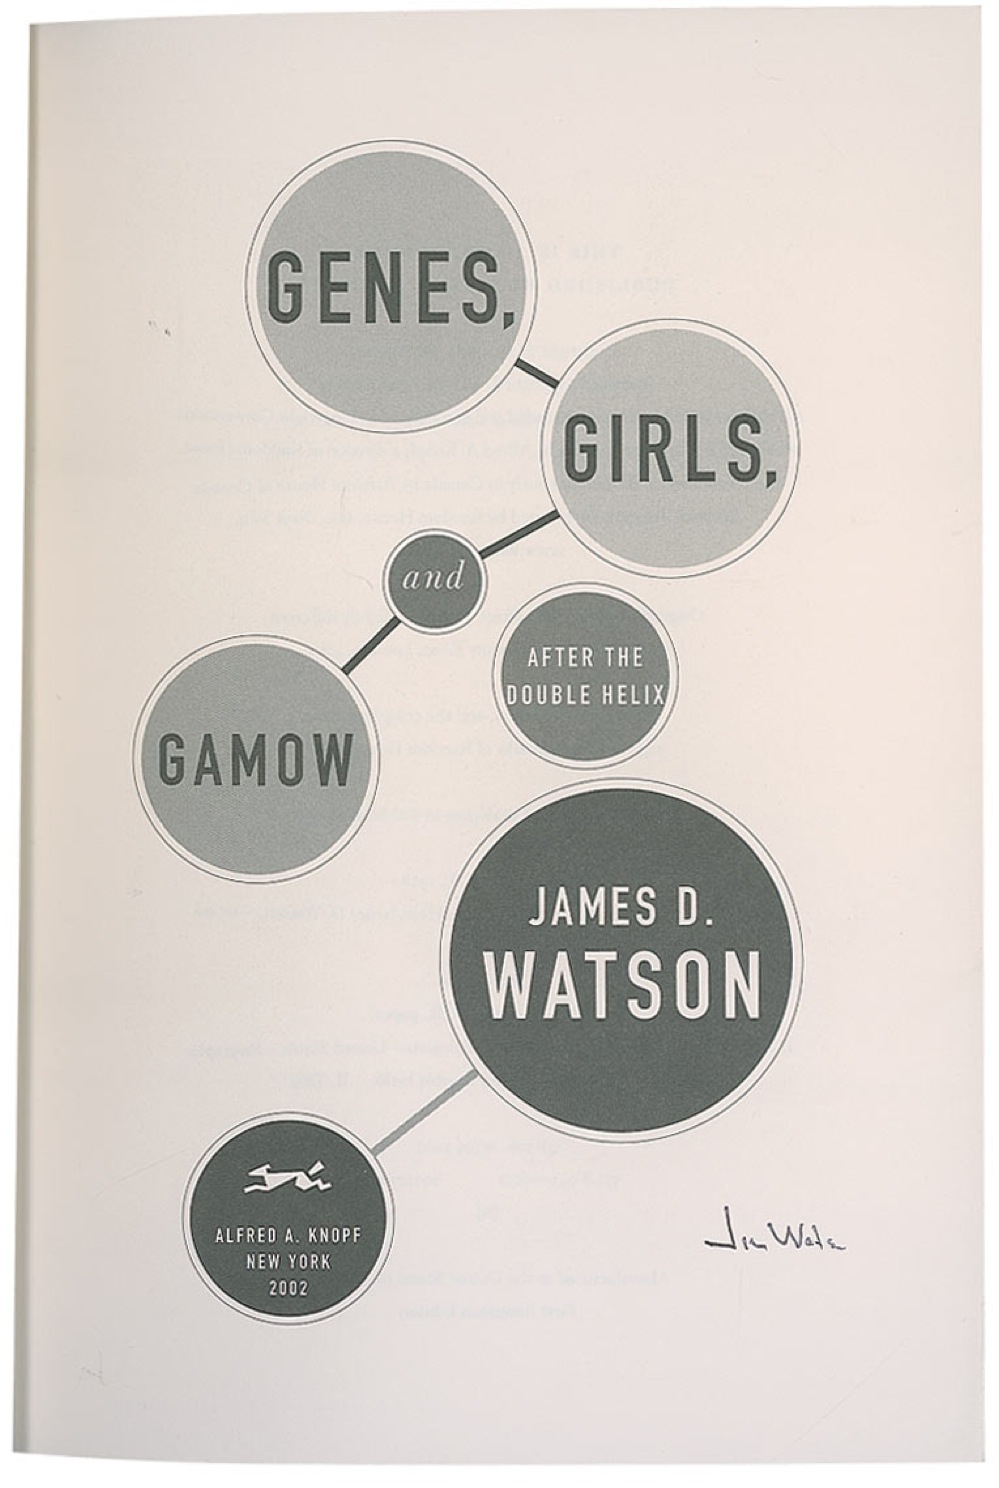 Lot #242 DNA: James D. Watson